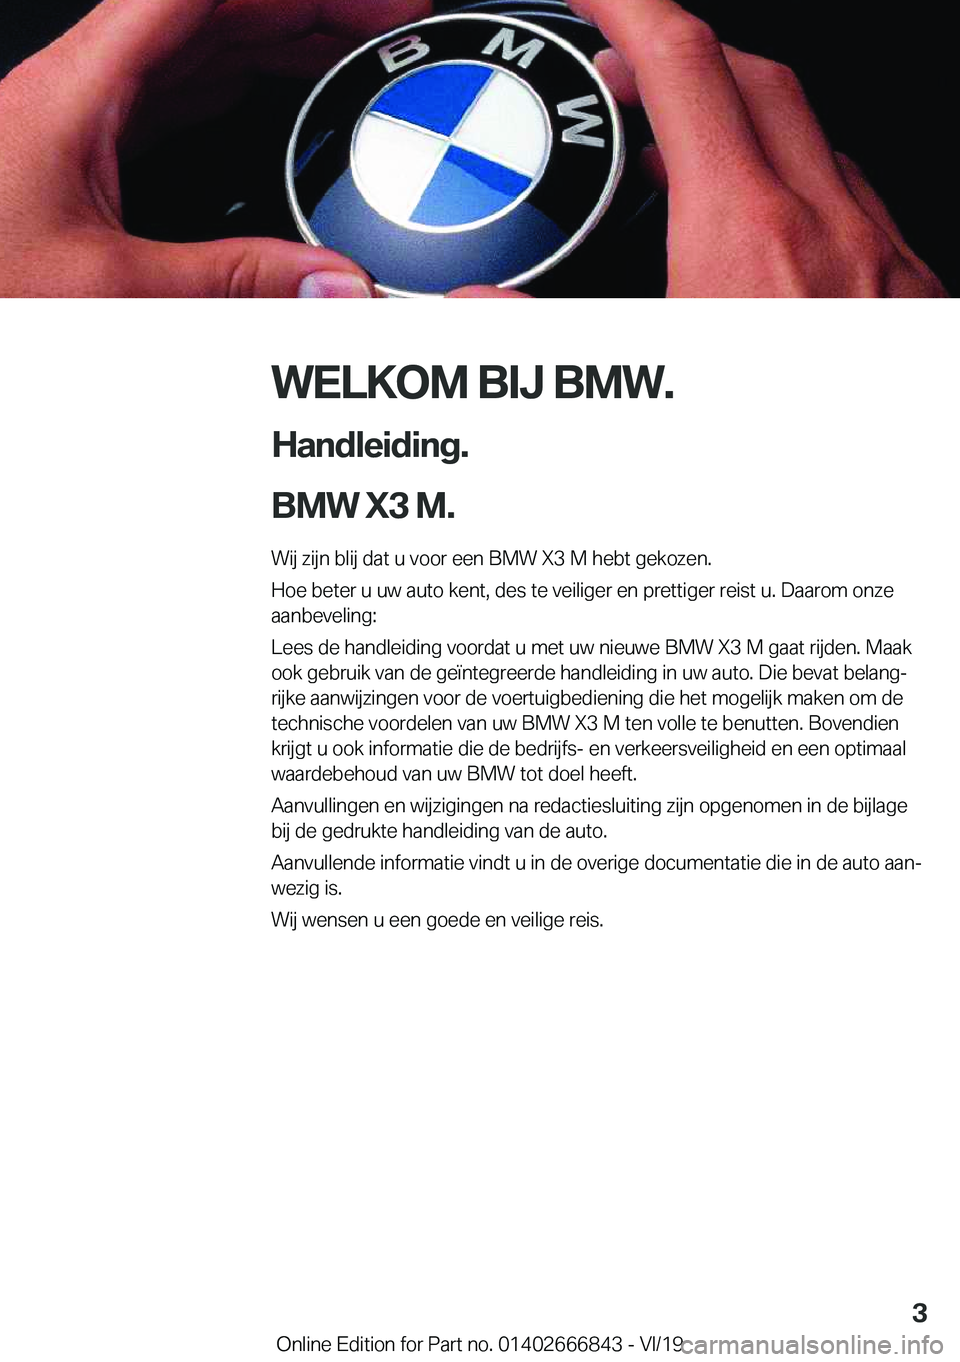 BMW X3 M 2020  Instructieboekjes (in Dutch) �W�E�L�K�O�M��B�I�J��B�M�W�.
�H�a�n�d�l�e�i�d�i�n�g�.
�B�M�W��X�3��M�. �W�i�j��z�i�j�n��b�l�i�j��d�a�t��u��v�o�o�r��e�e�n��B�M�W��X�3��M��h�e�b�t��g�e�k�o�z�e�n�.
�H�o�e��b�e�t�e�r��u